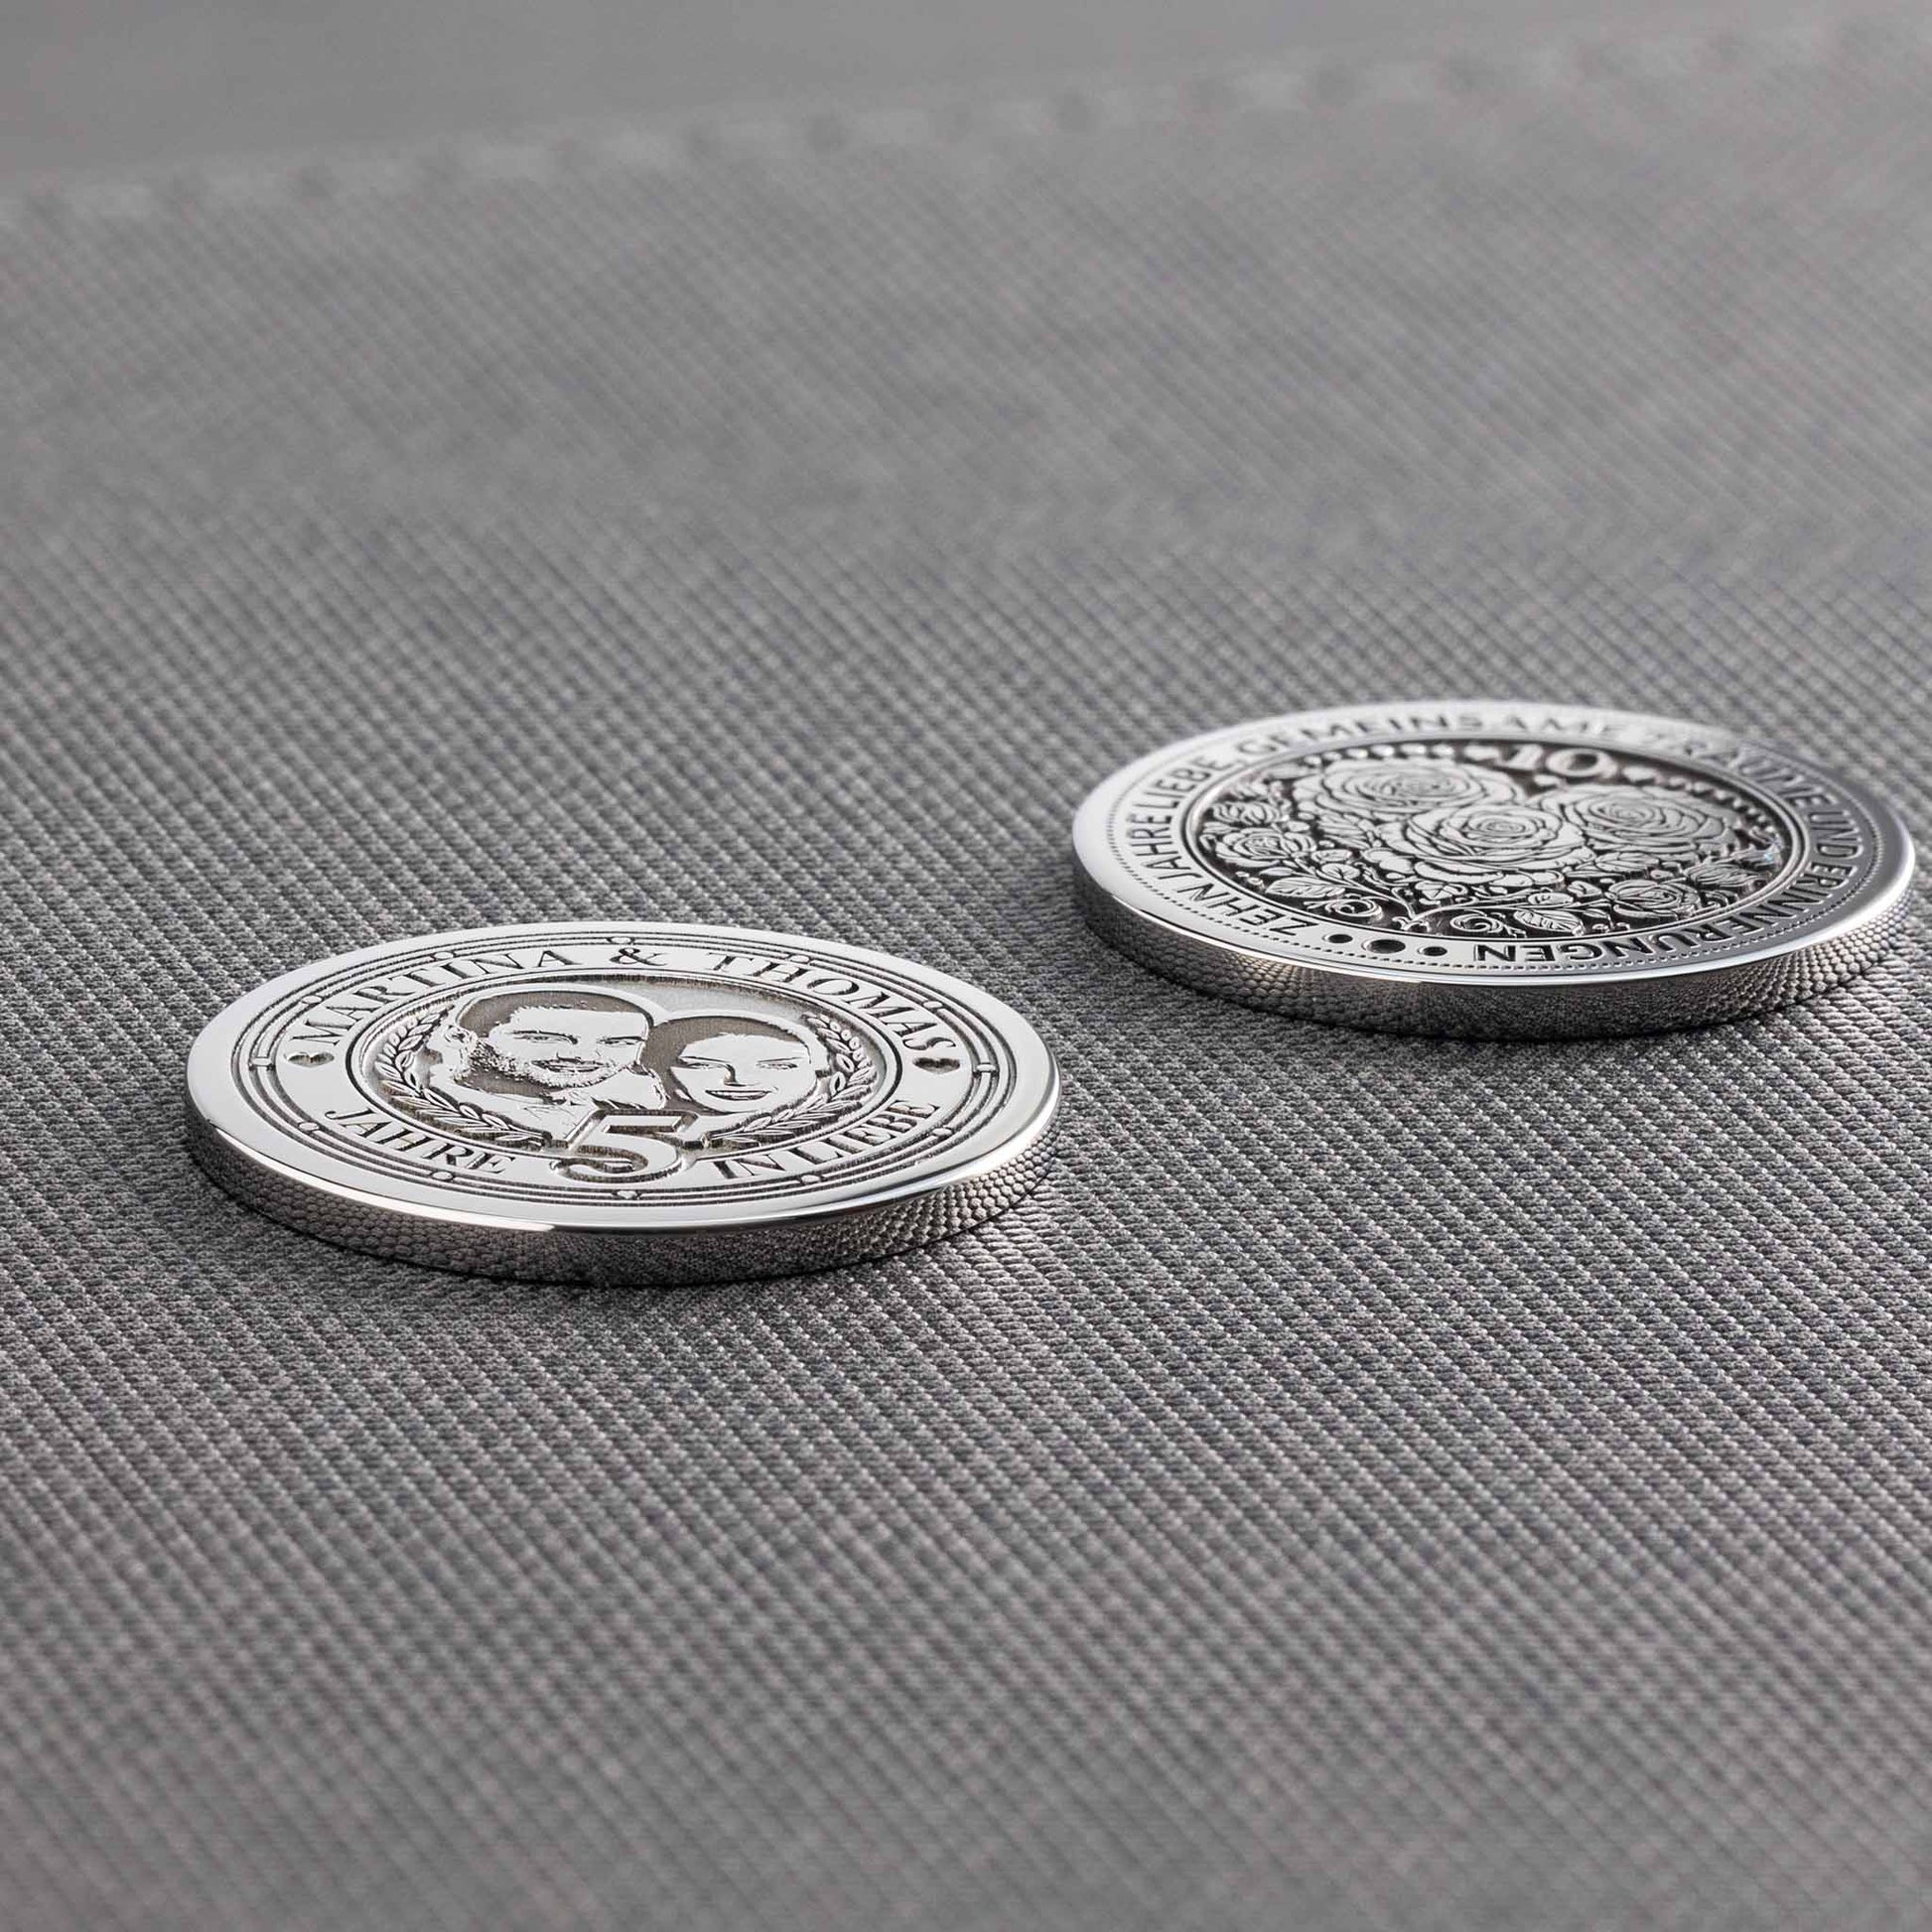 Münze Selbst Gestalten: Einfache Personalisierung und Hochwertige Materialien